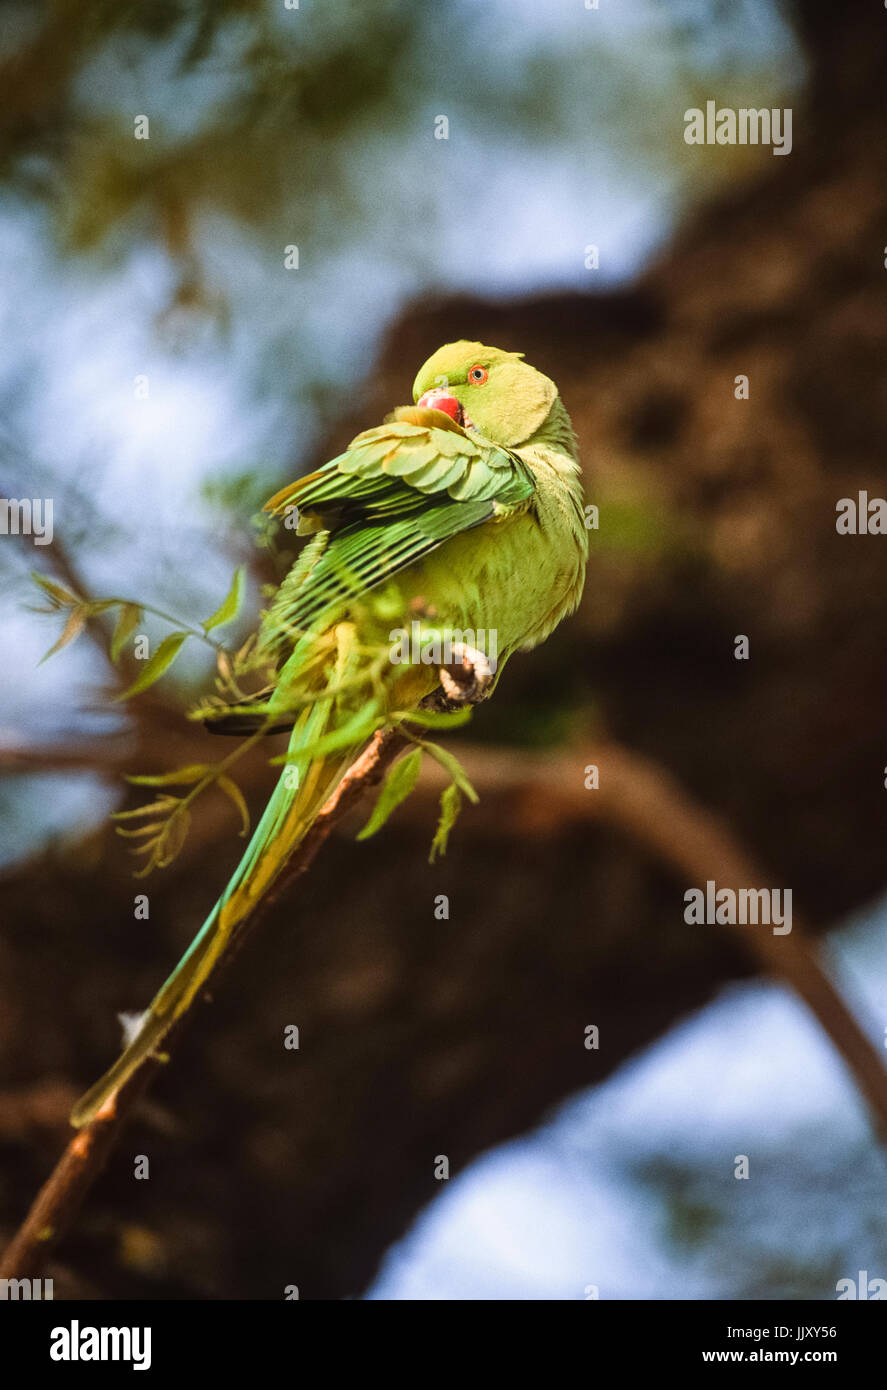 Ring-necked oder Rose-ringed Parakeet (Psittacula krameri), Putzen auf Zweig, Regents Park, London, Vereinigtes Königreich Stockfoto